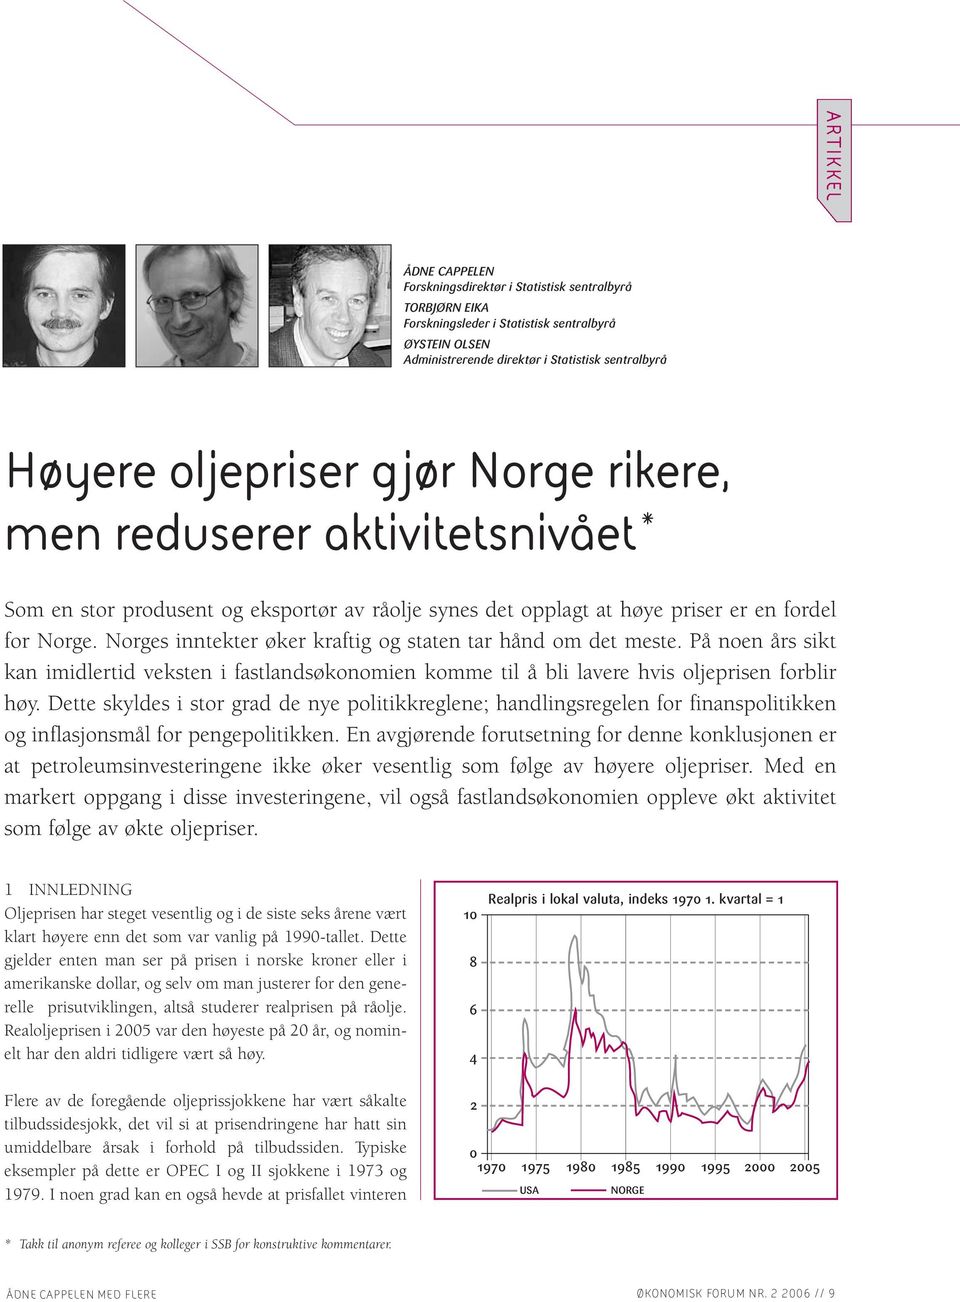 Norges inntekter øker kraftig og staten tar hånd om det meste. På noen års sikt kan imidlertid veksten i fastlandsøkonomien komme til å bli lavere hvis oljeprisen forblir høy.